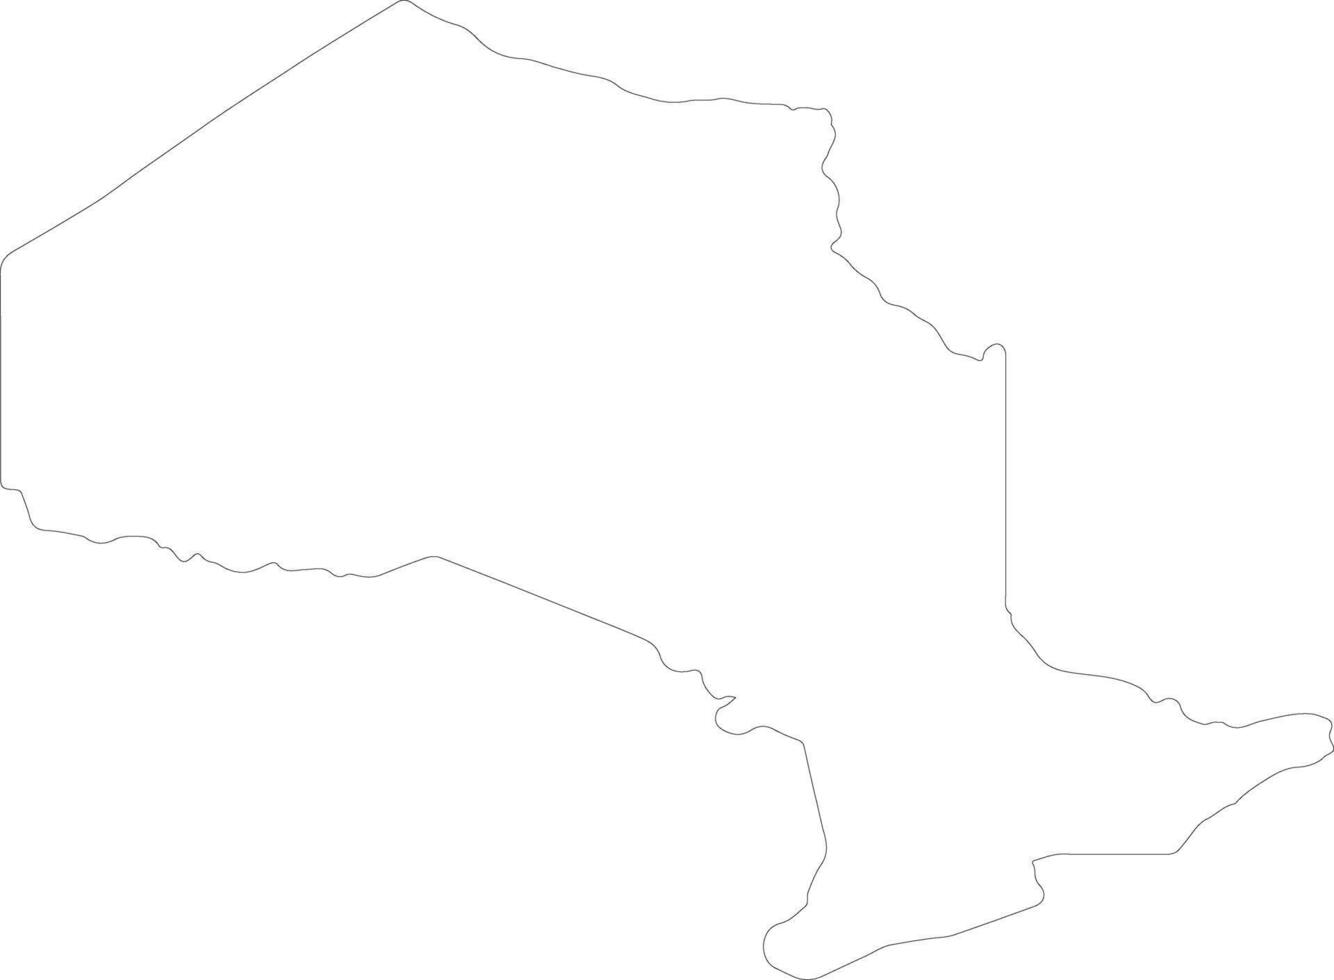 Ontario Canada outline map vector